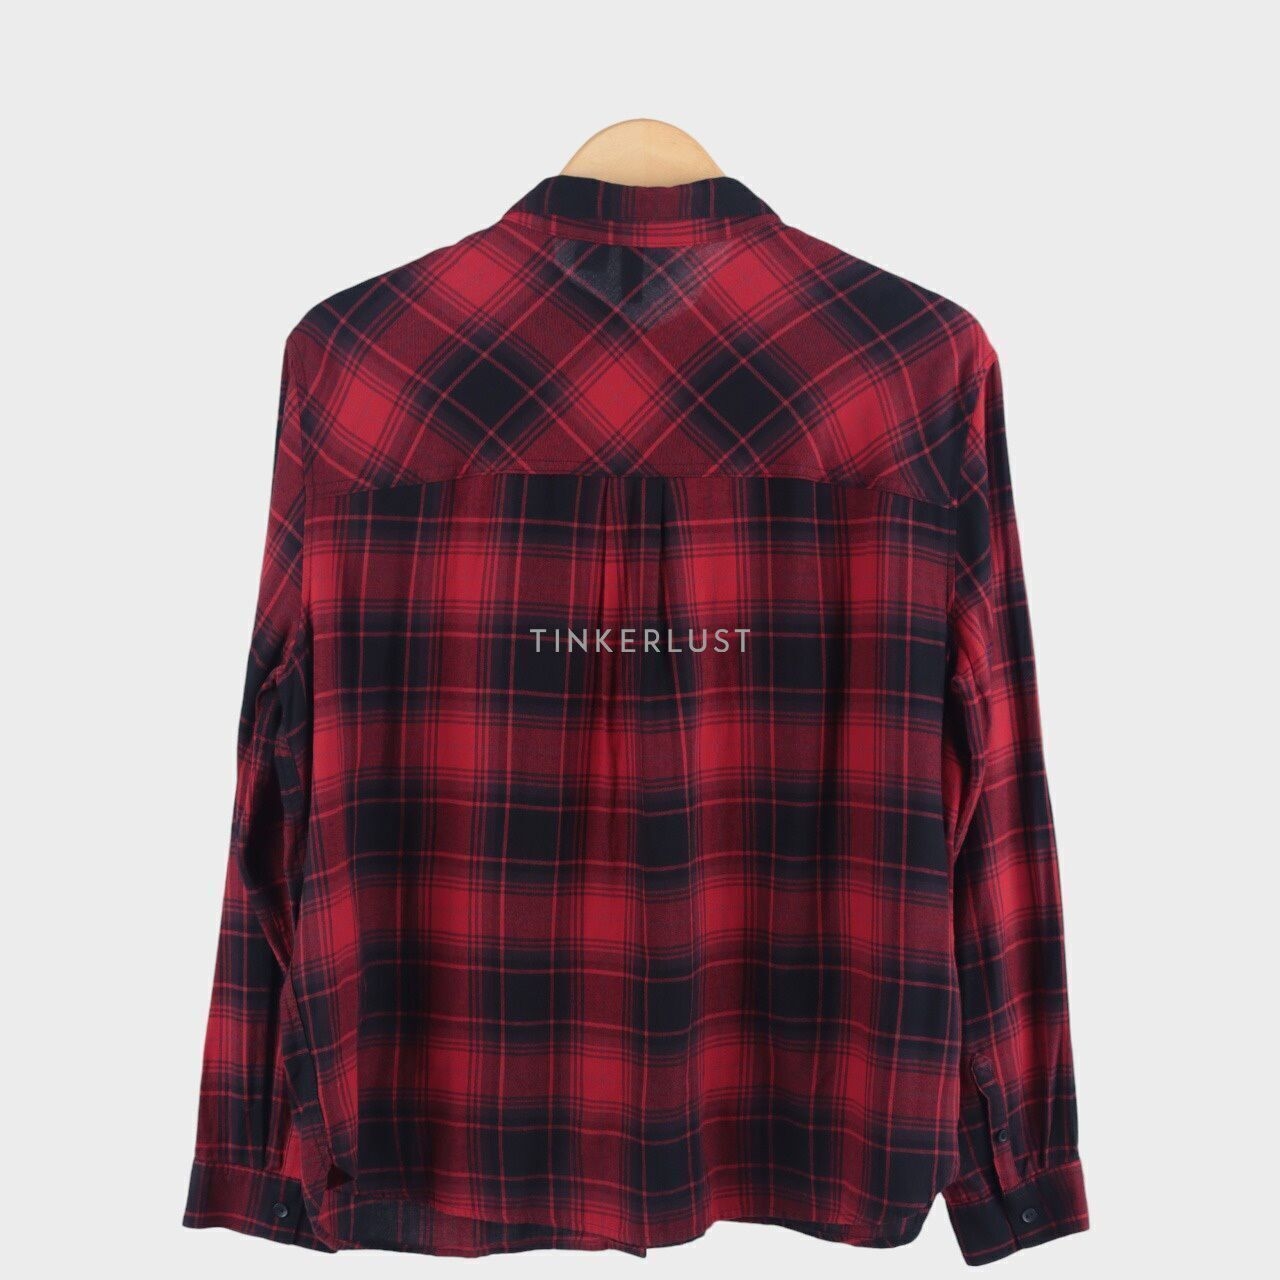 H&M Black & Red Plaid Shirt